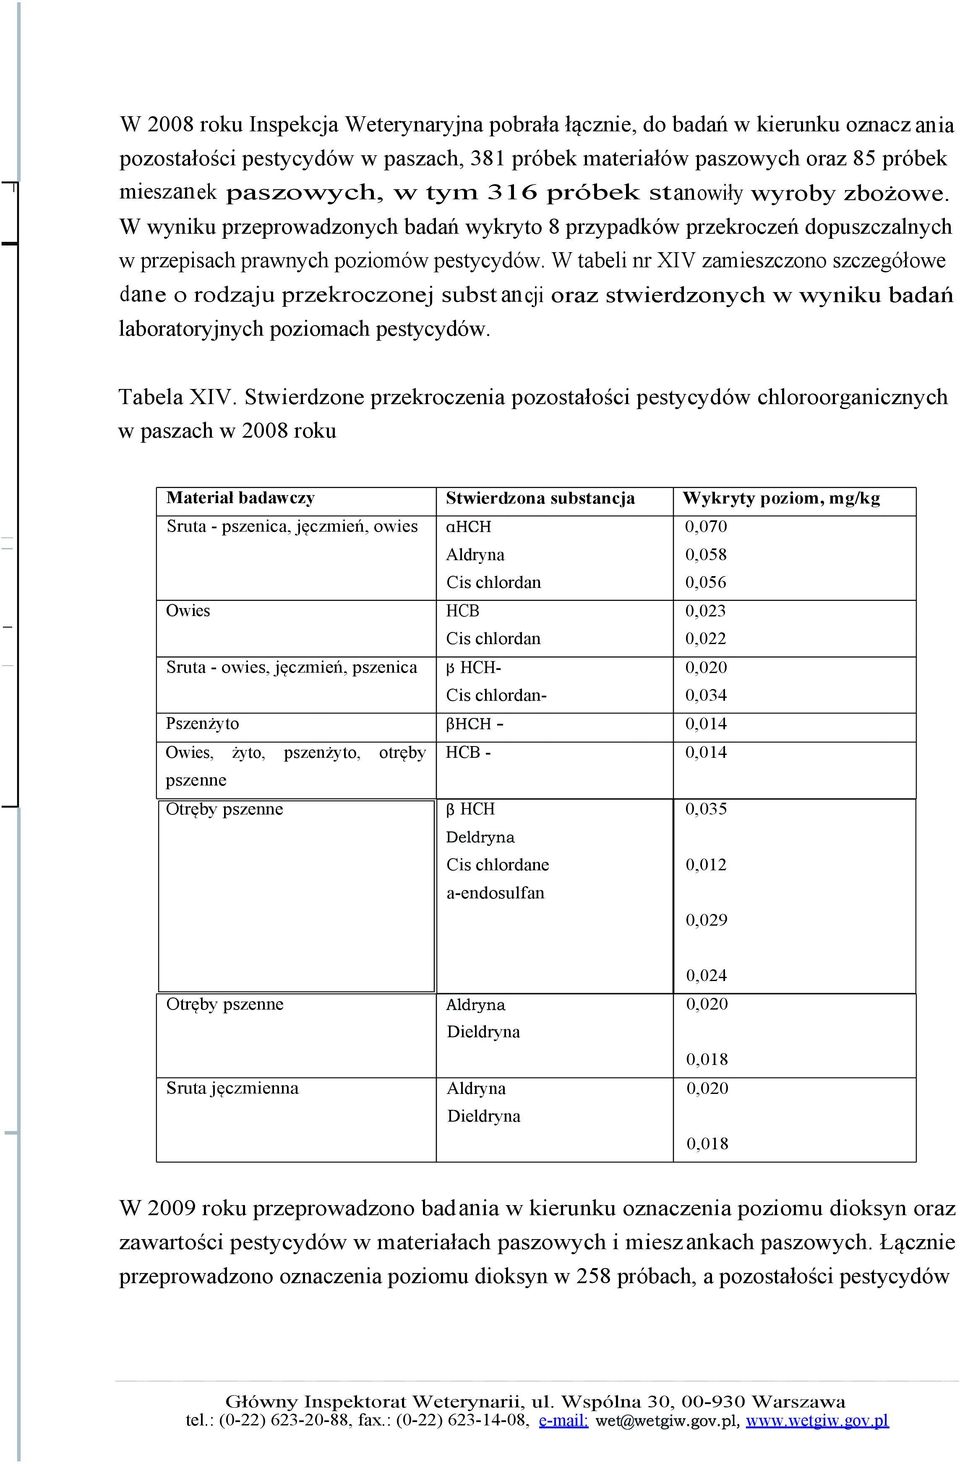 W tabeli nr XIV zamieszczono szczegółowe dane o rodzaju przekroczonej subst ancji oraz stwierdzonych w wyniku badań laboratoryjnych poziomach pestycydów. Tabela XIV.